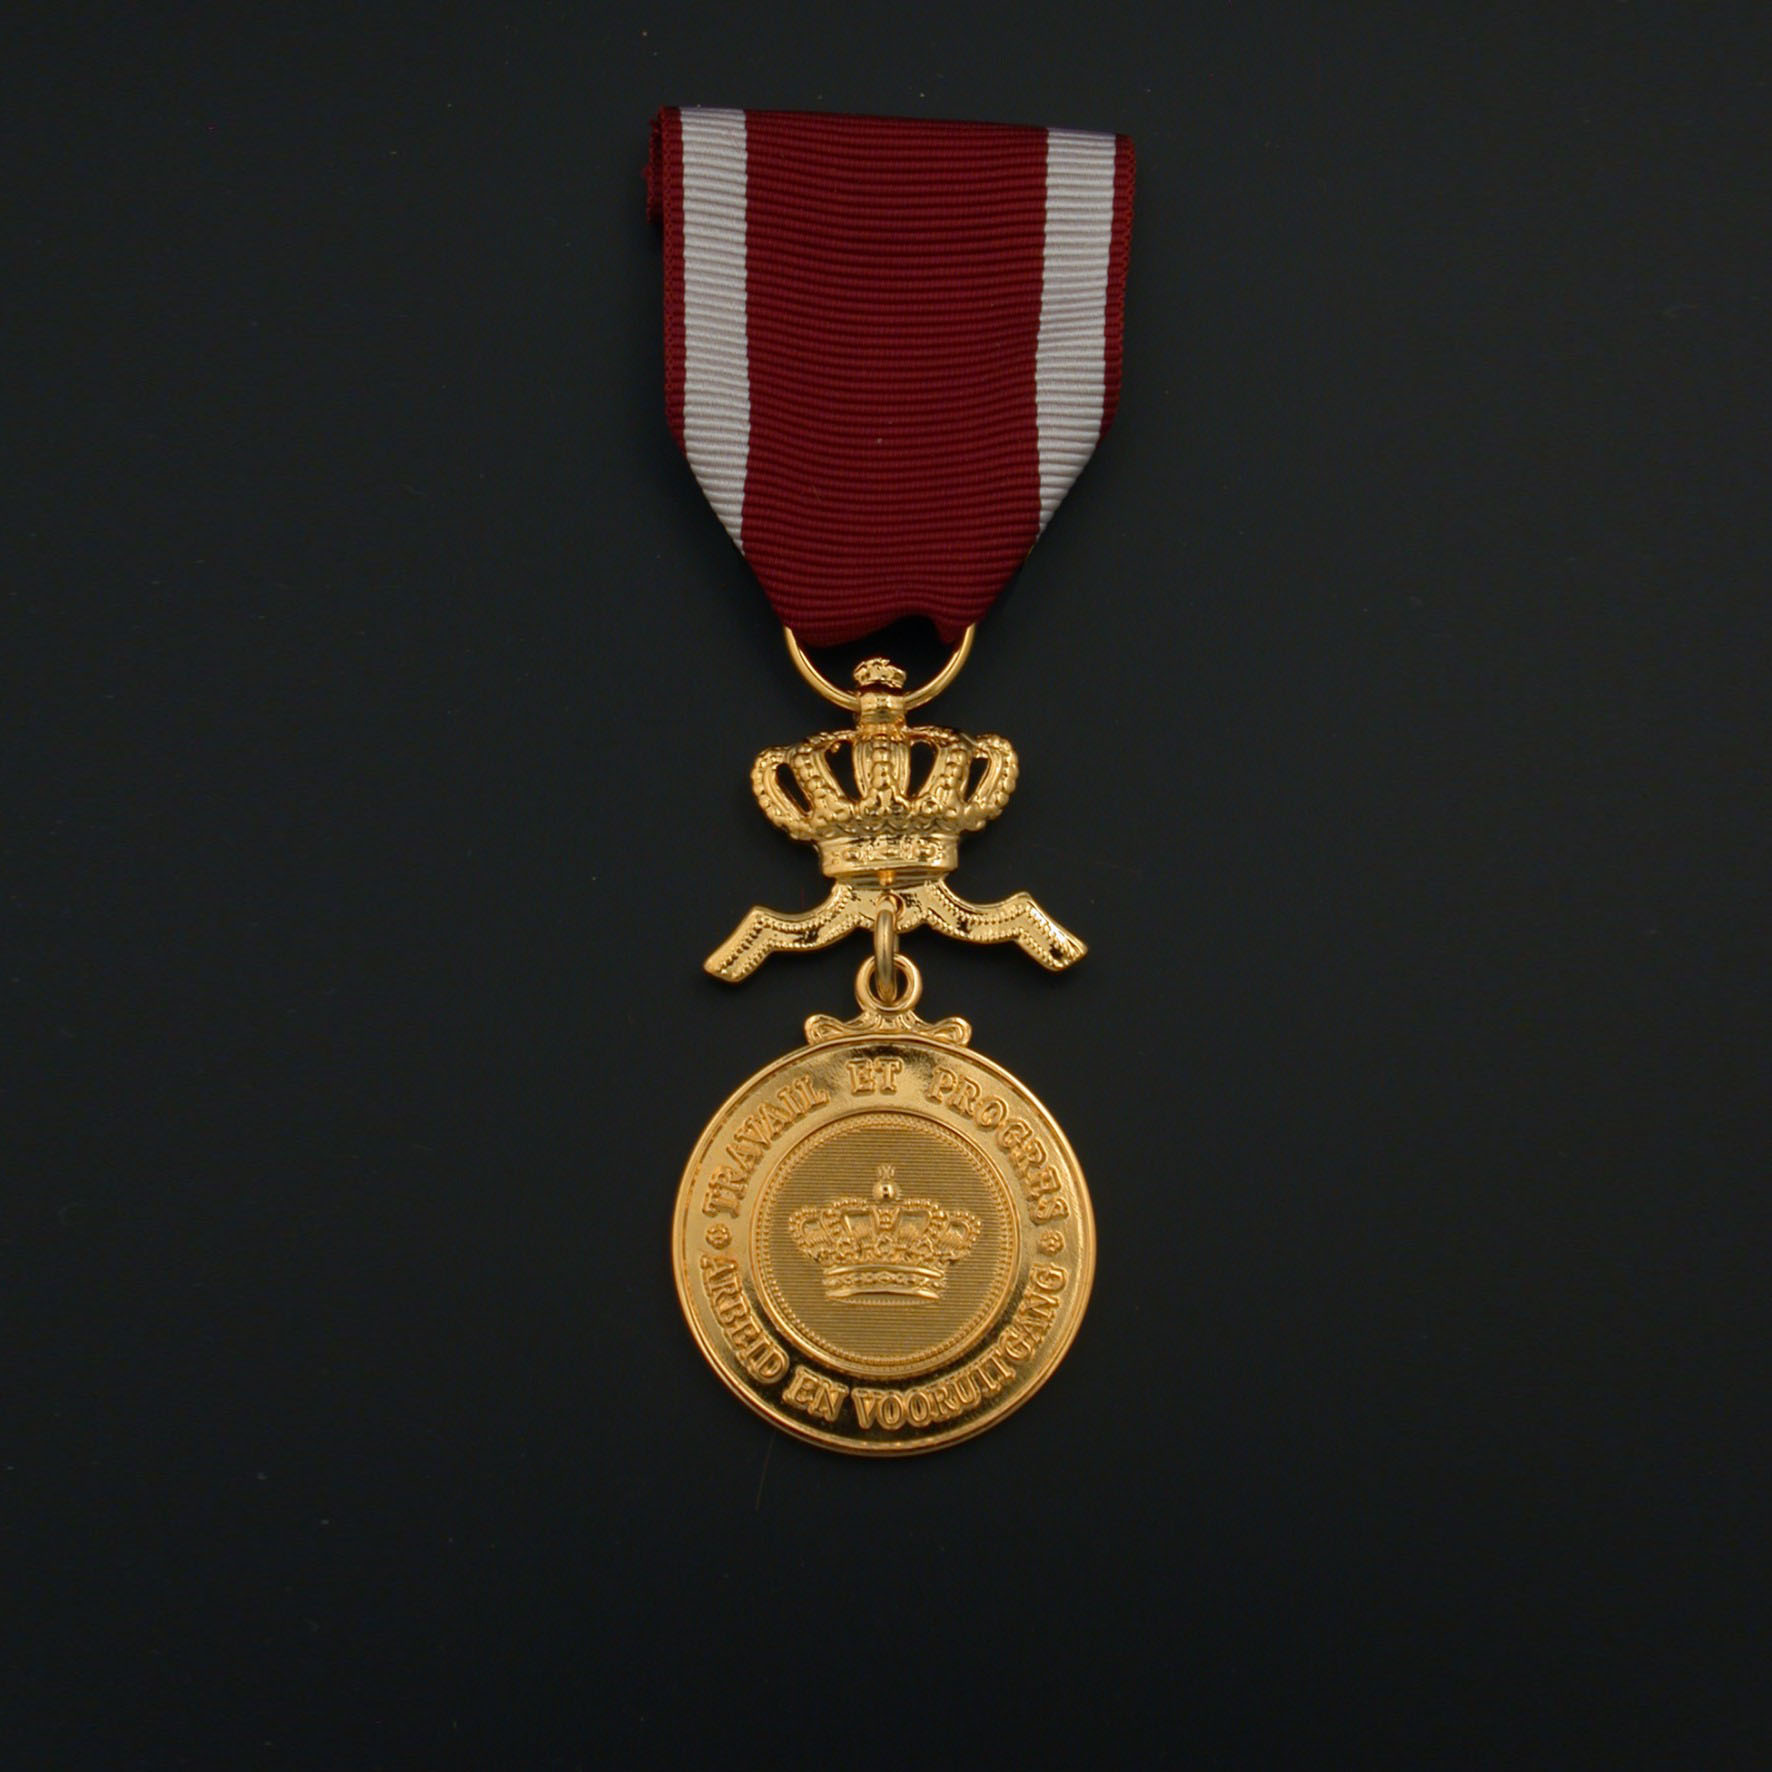 officieel-ereteken-kroonorde-gouden-medaille-01-01-03-kroonorde-gouden-medaille-officieel-model.jpg